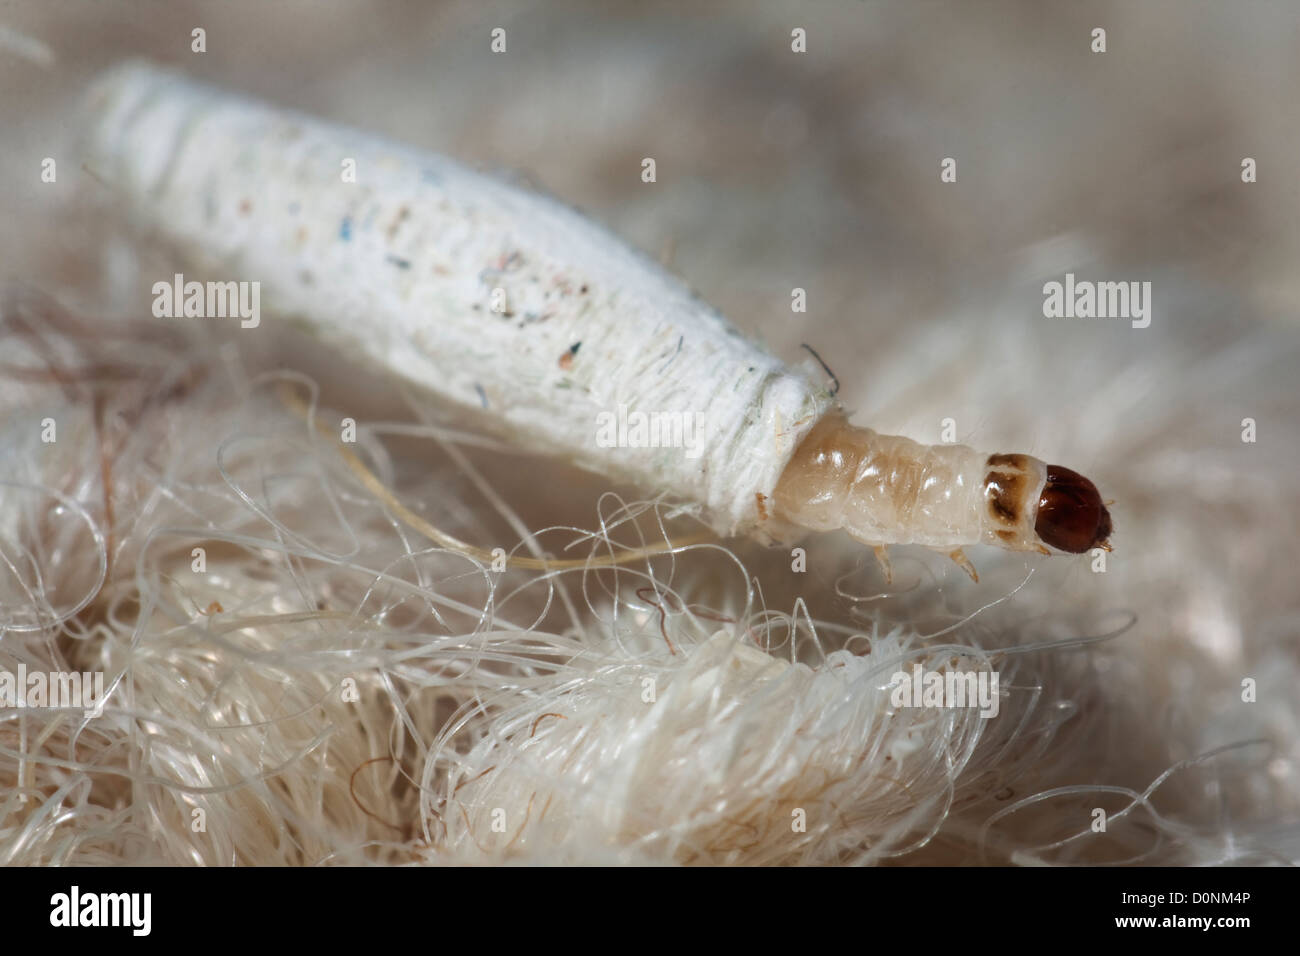 Kleidermottenlarve -Fotos und -Bildmaterial in hoher Auflösung – Alamy